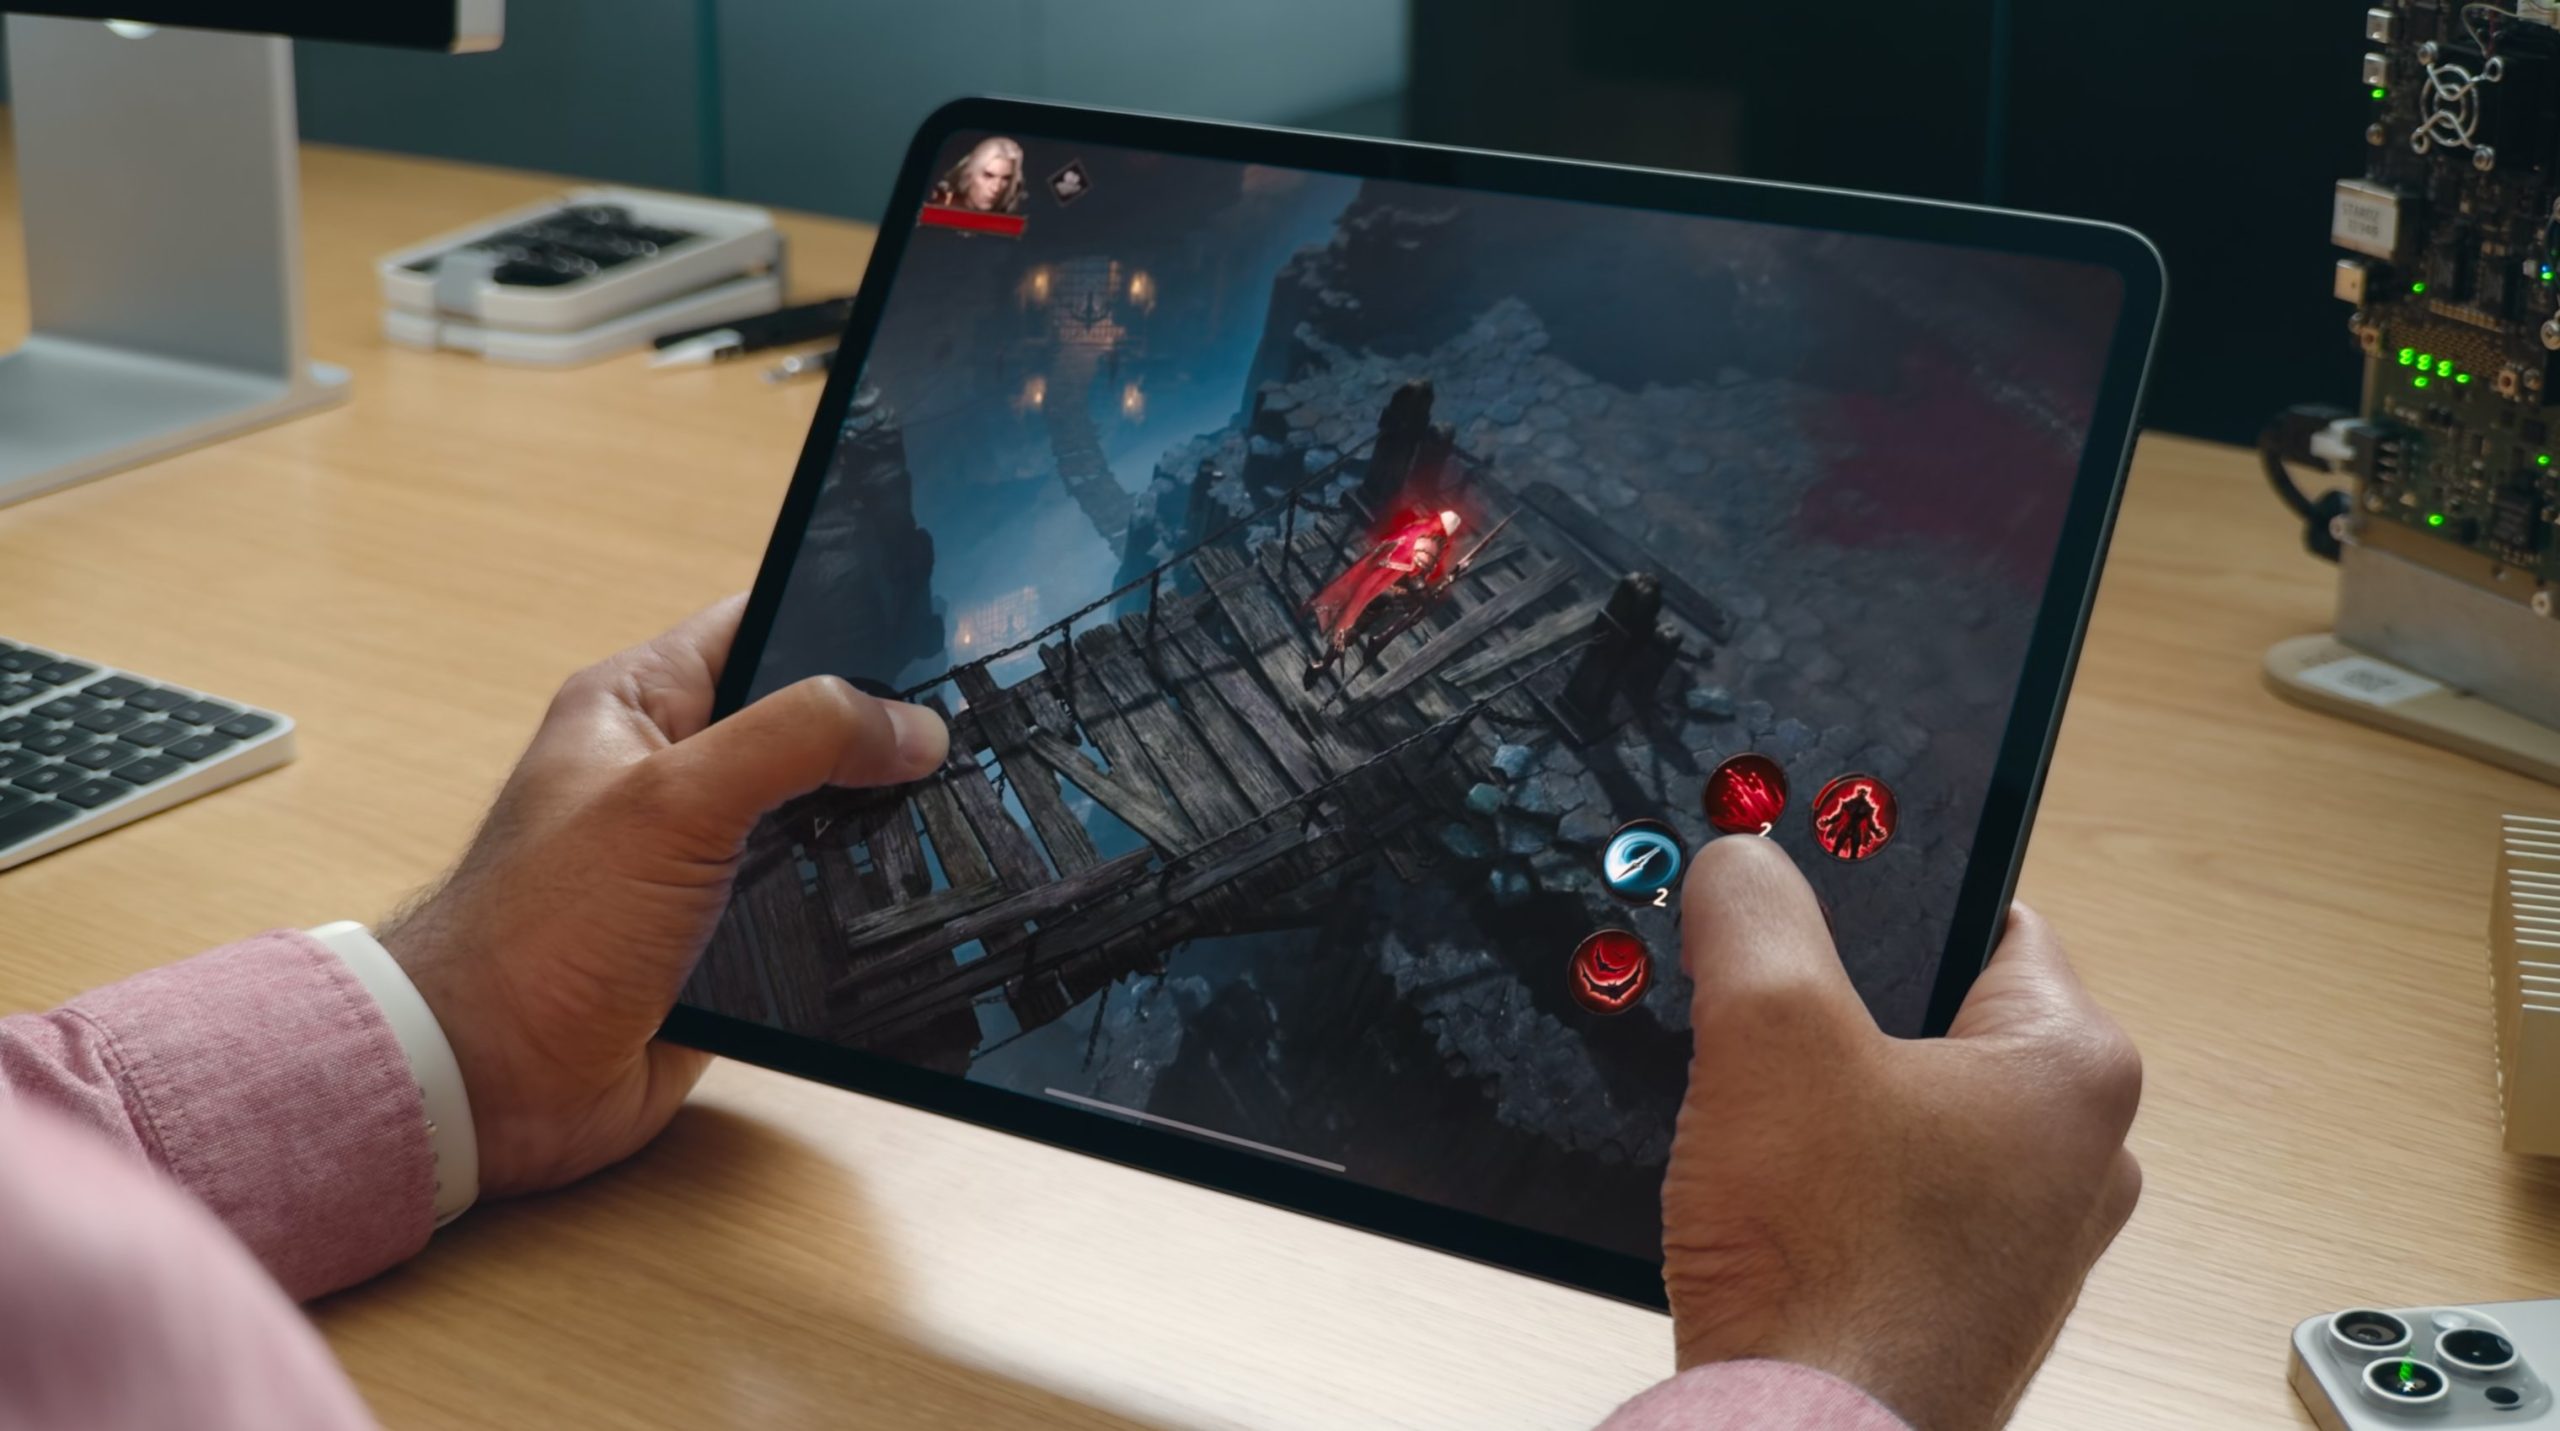 Juegando a un videojuego con ray tracing en un iPad Pro